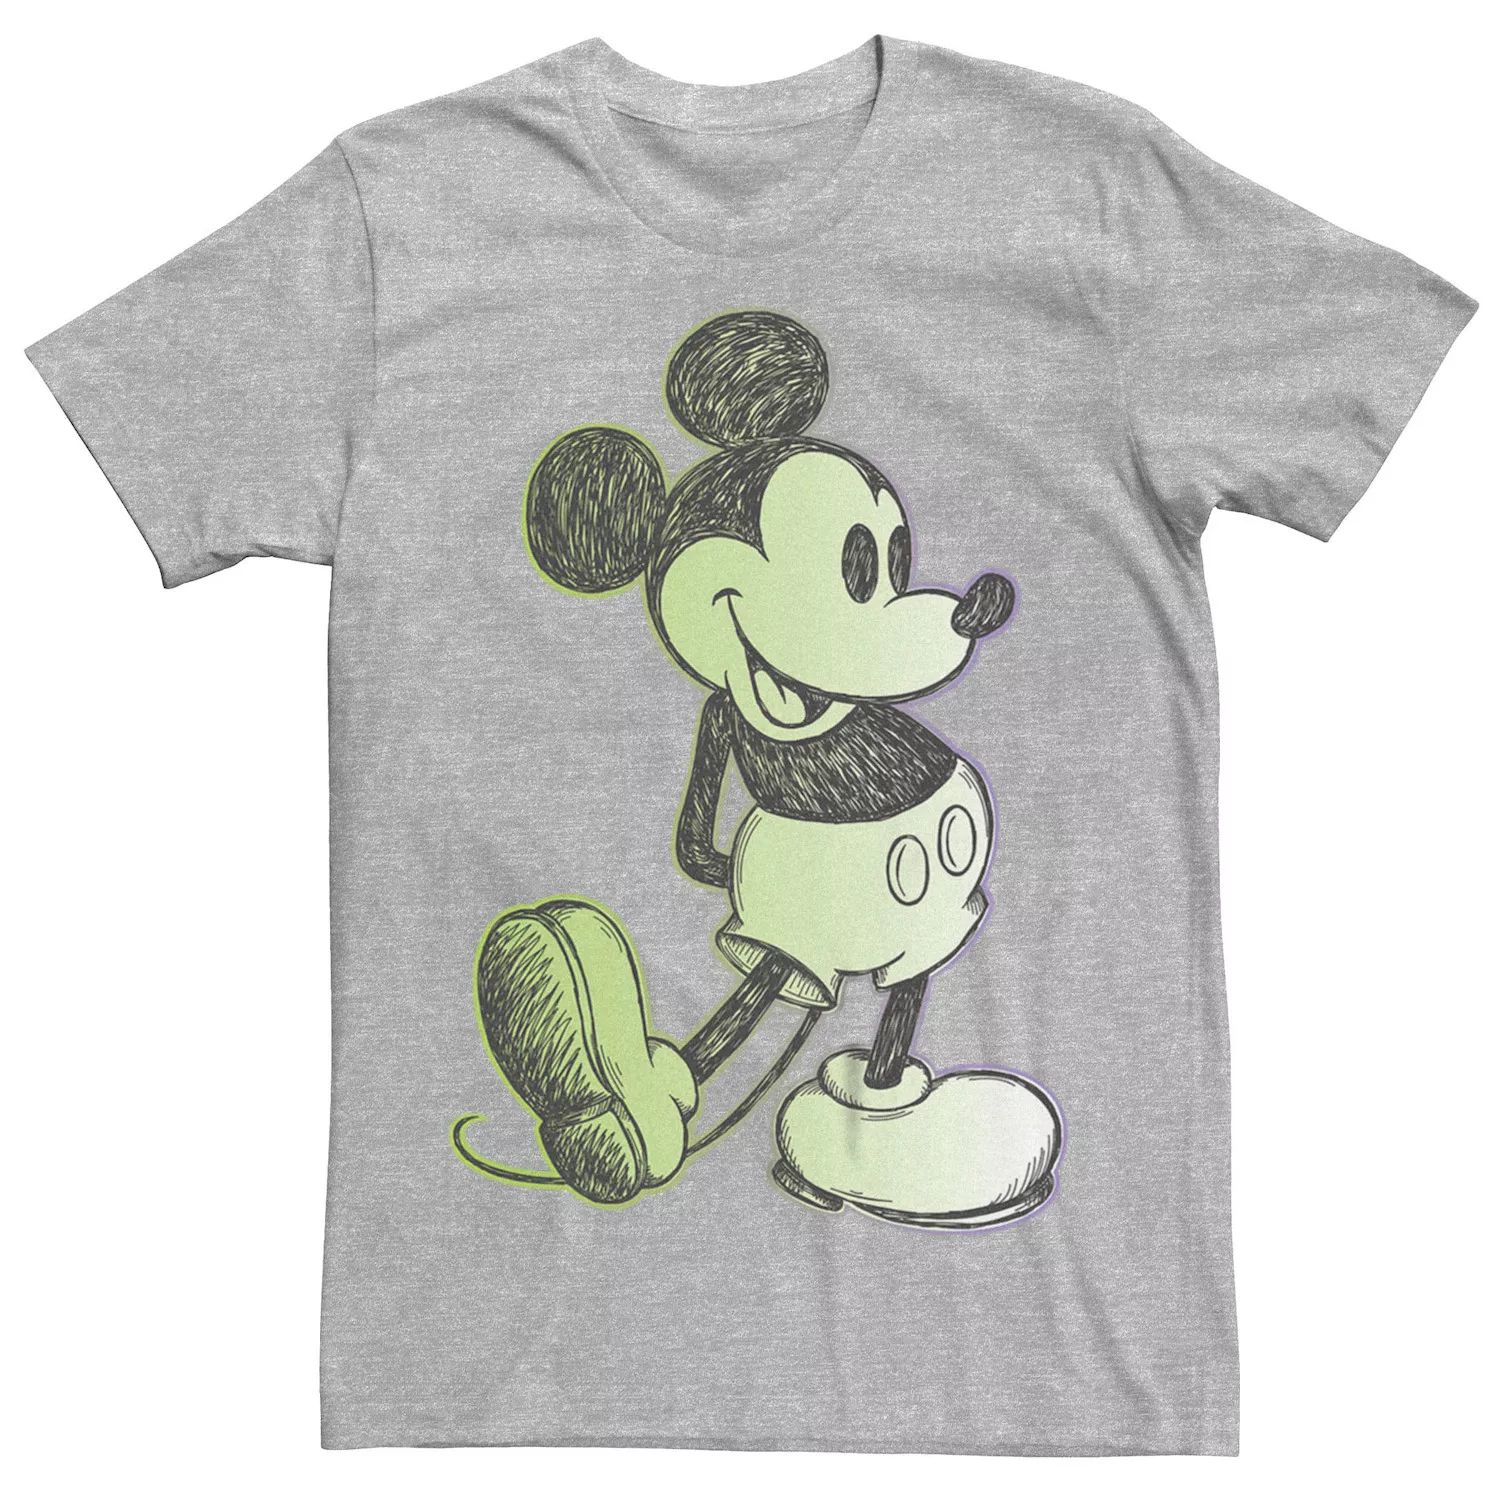 Мужская классическая футболка Disney с Микки Маусом Licensed Character футболка с надписью я спросил с предложением помолвки с микки маусом от disney licensed character